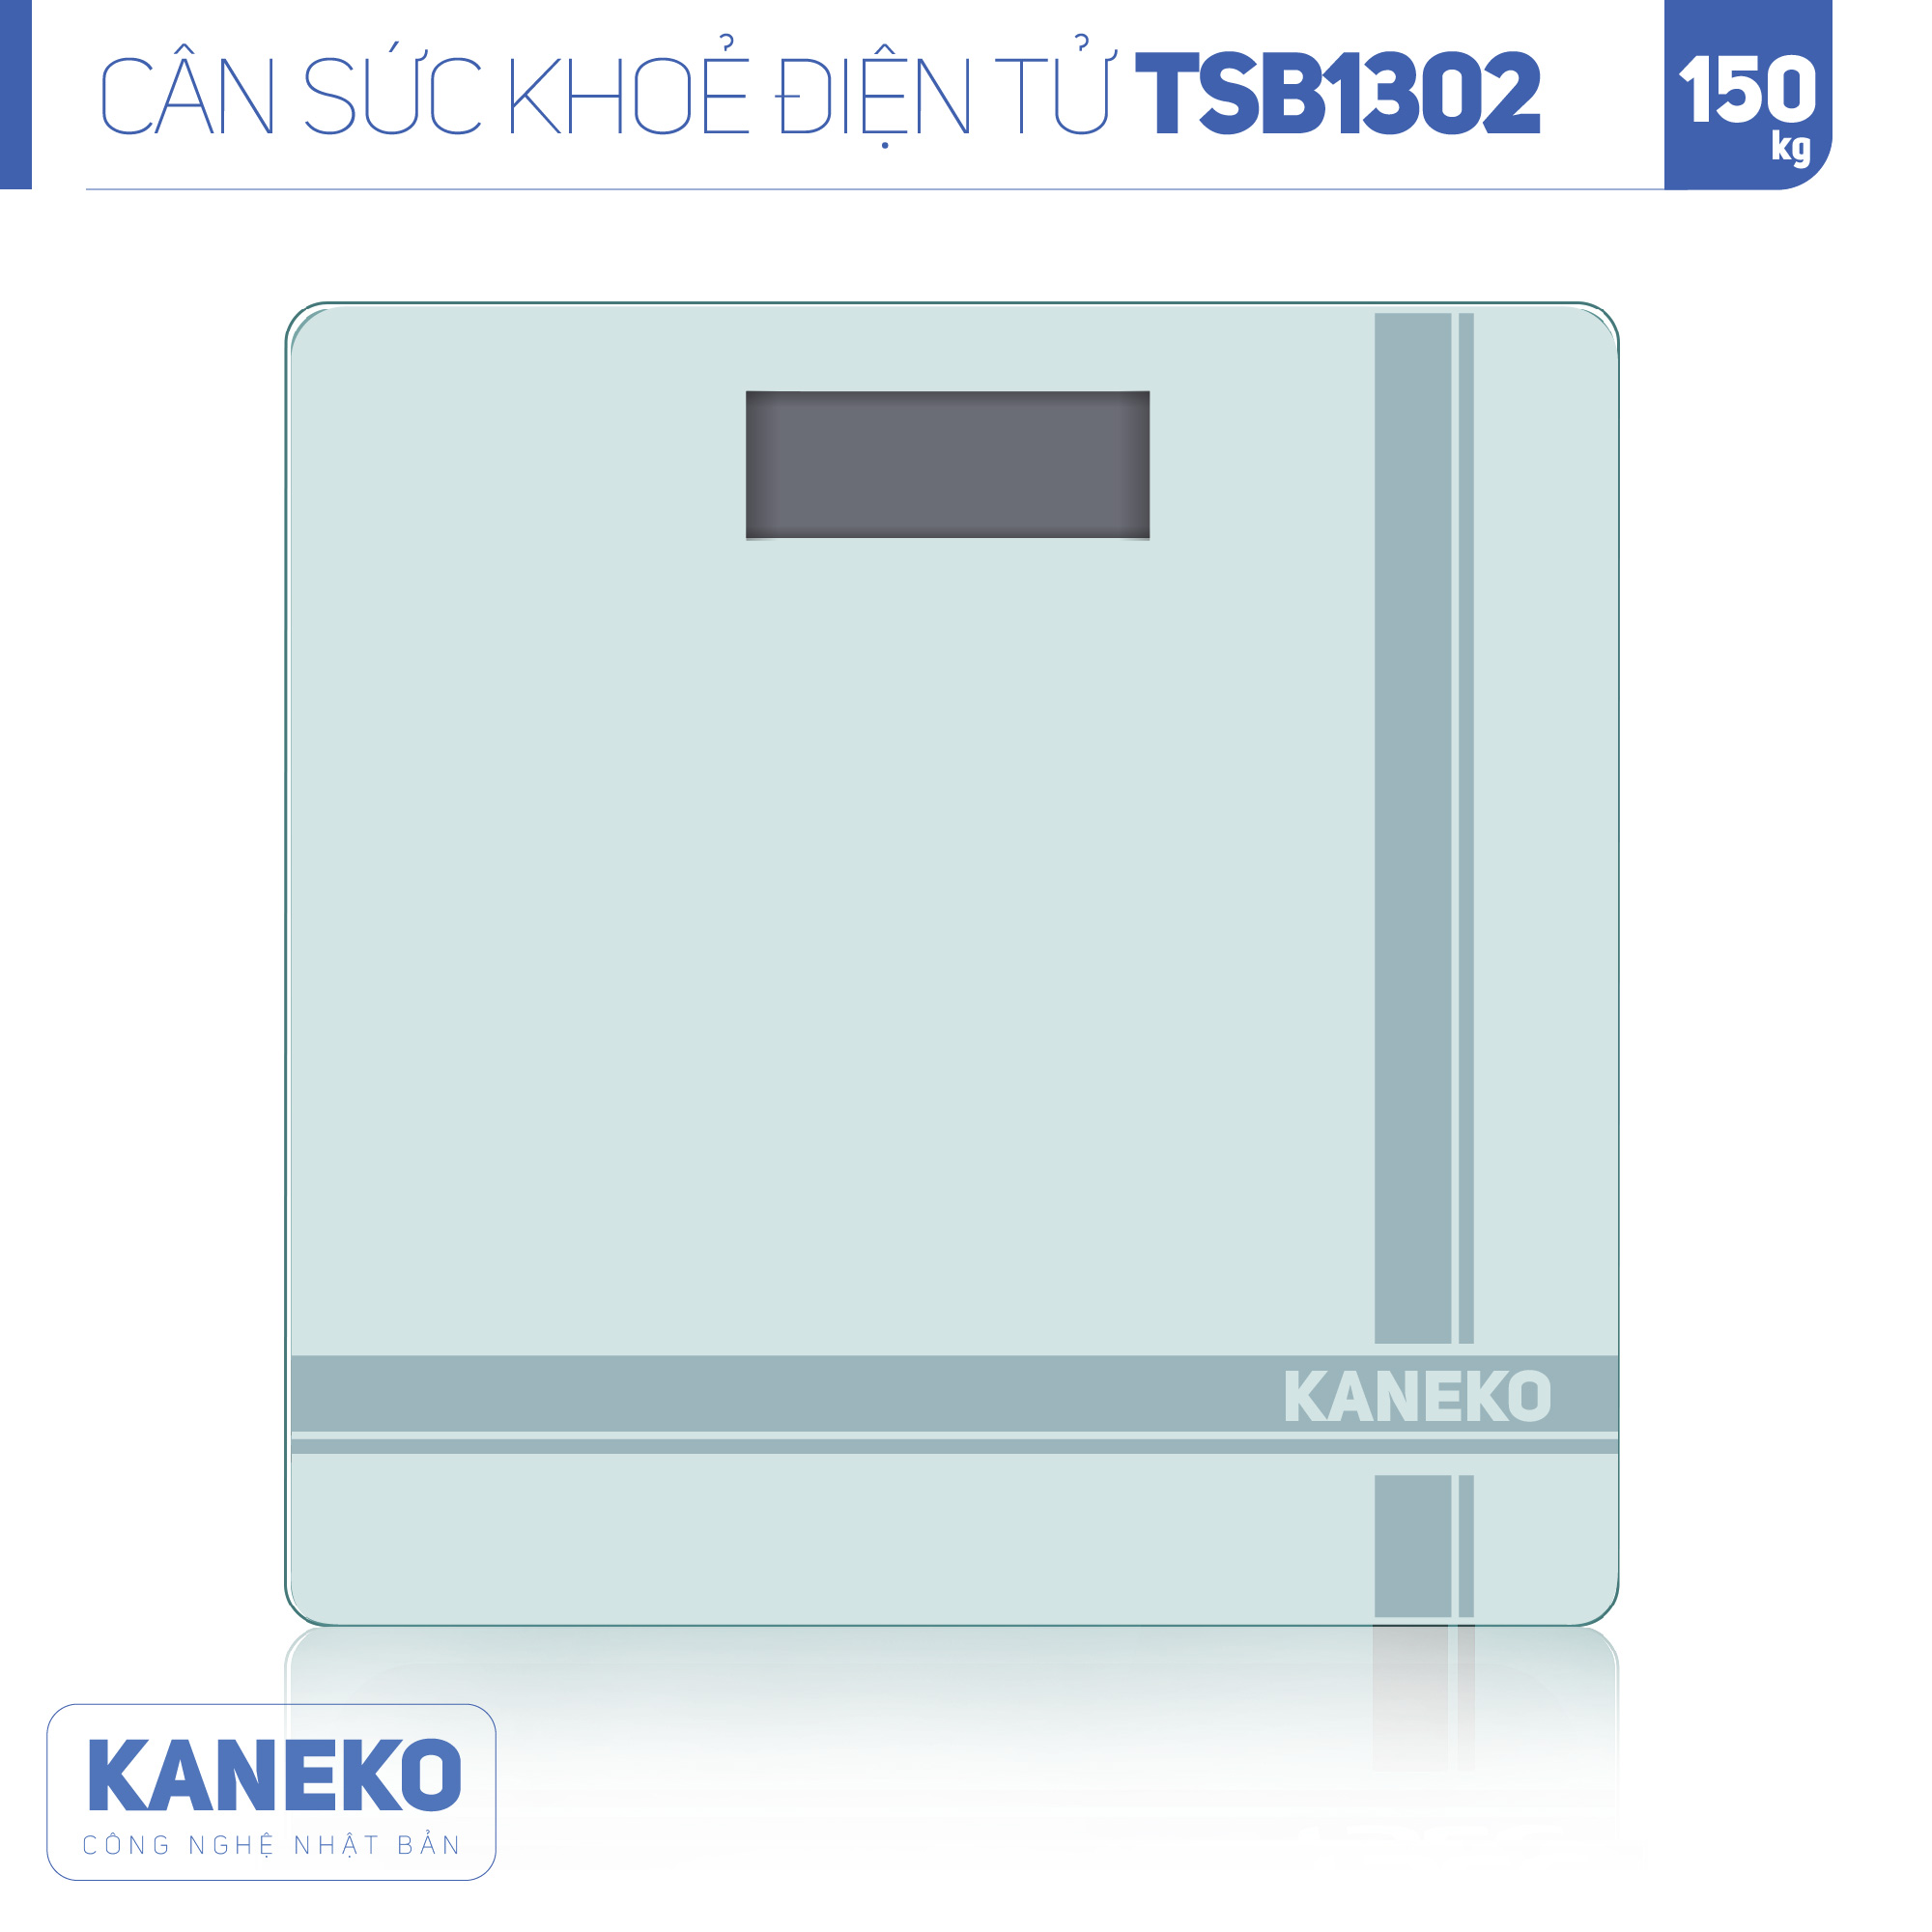 Cân sức khỏe điện tử KANEKO TSB1302,,cân điện tử,cân chính hãng,cân nhật,cân sức khoẻ y tế,cân sức khoẻ gia đình,cân sức khoẻ cao cấp,120kg,130kg,180kg,Cân phân tích chỉ số cơ thể,Cân sức khoẻ mini,cân tanita